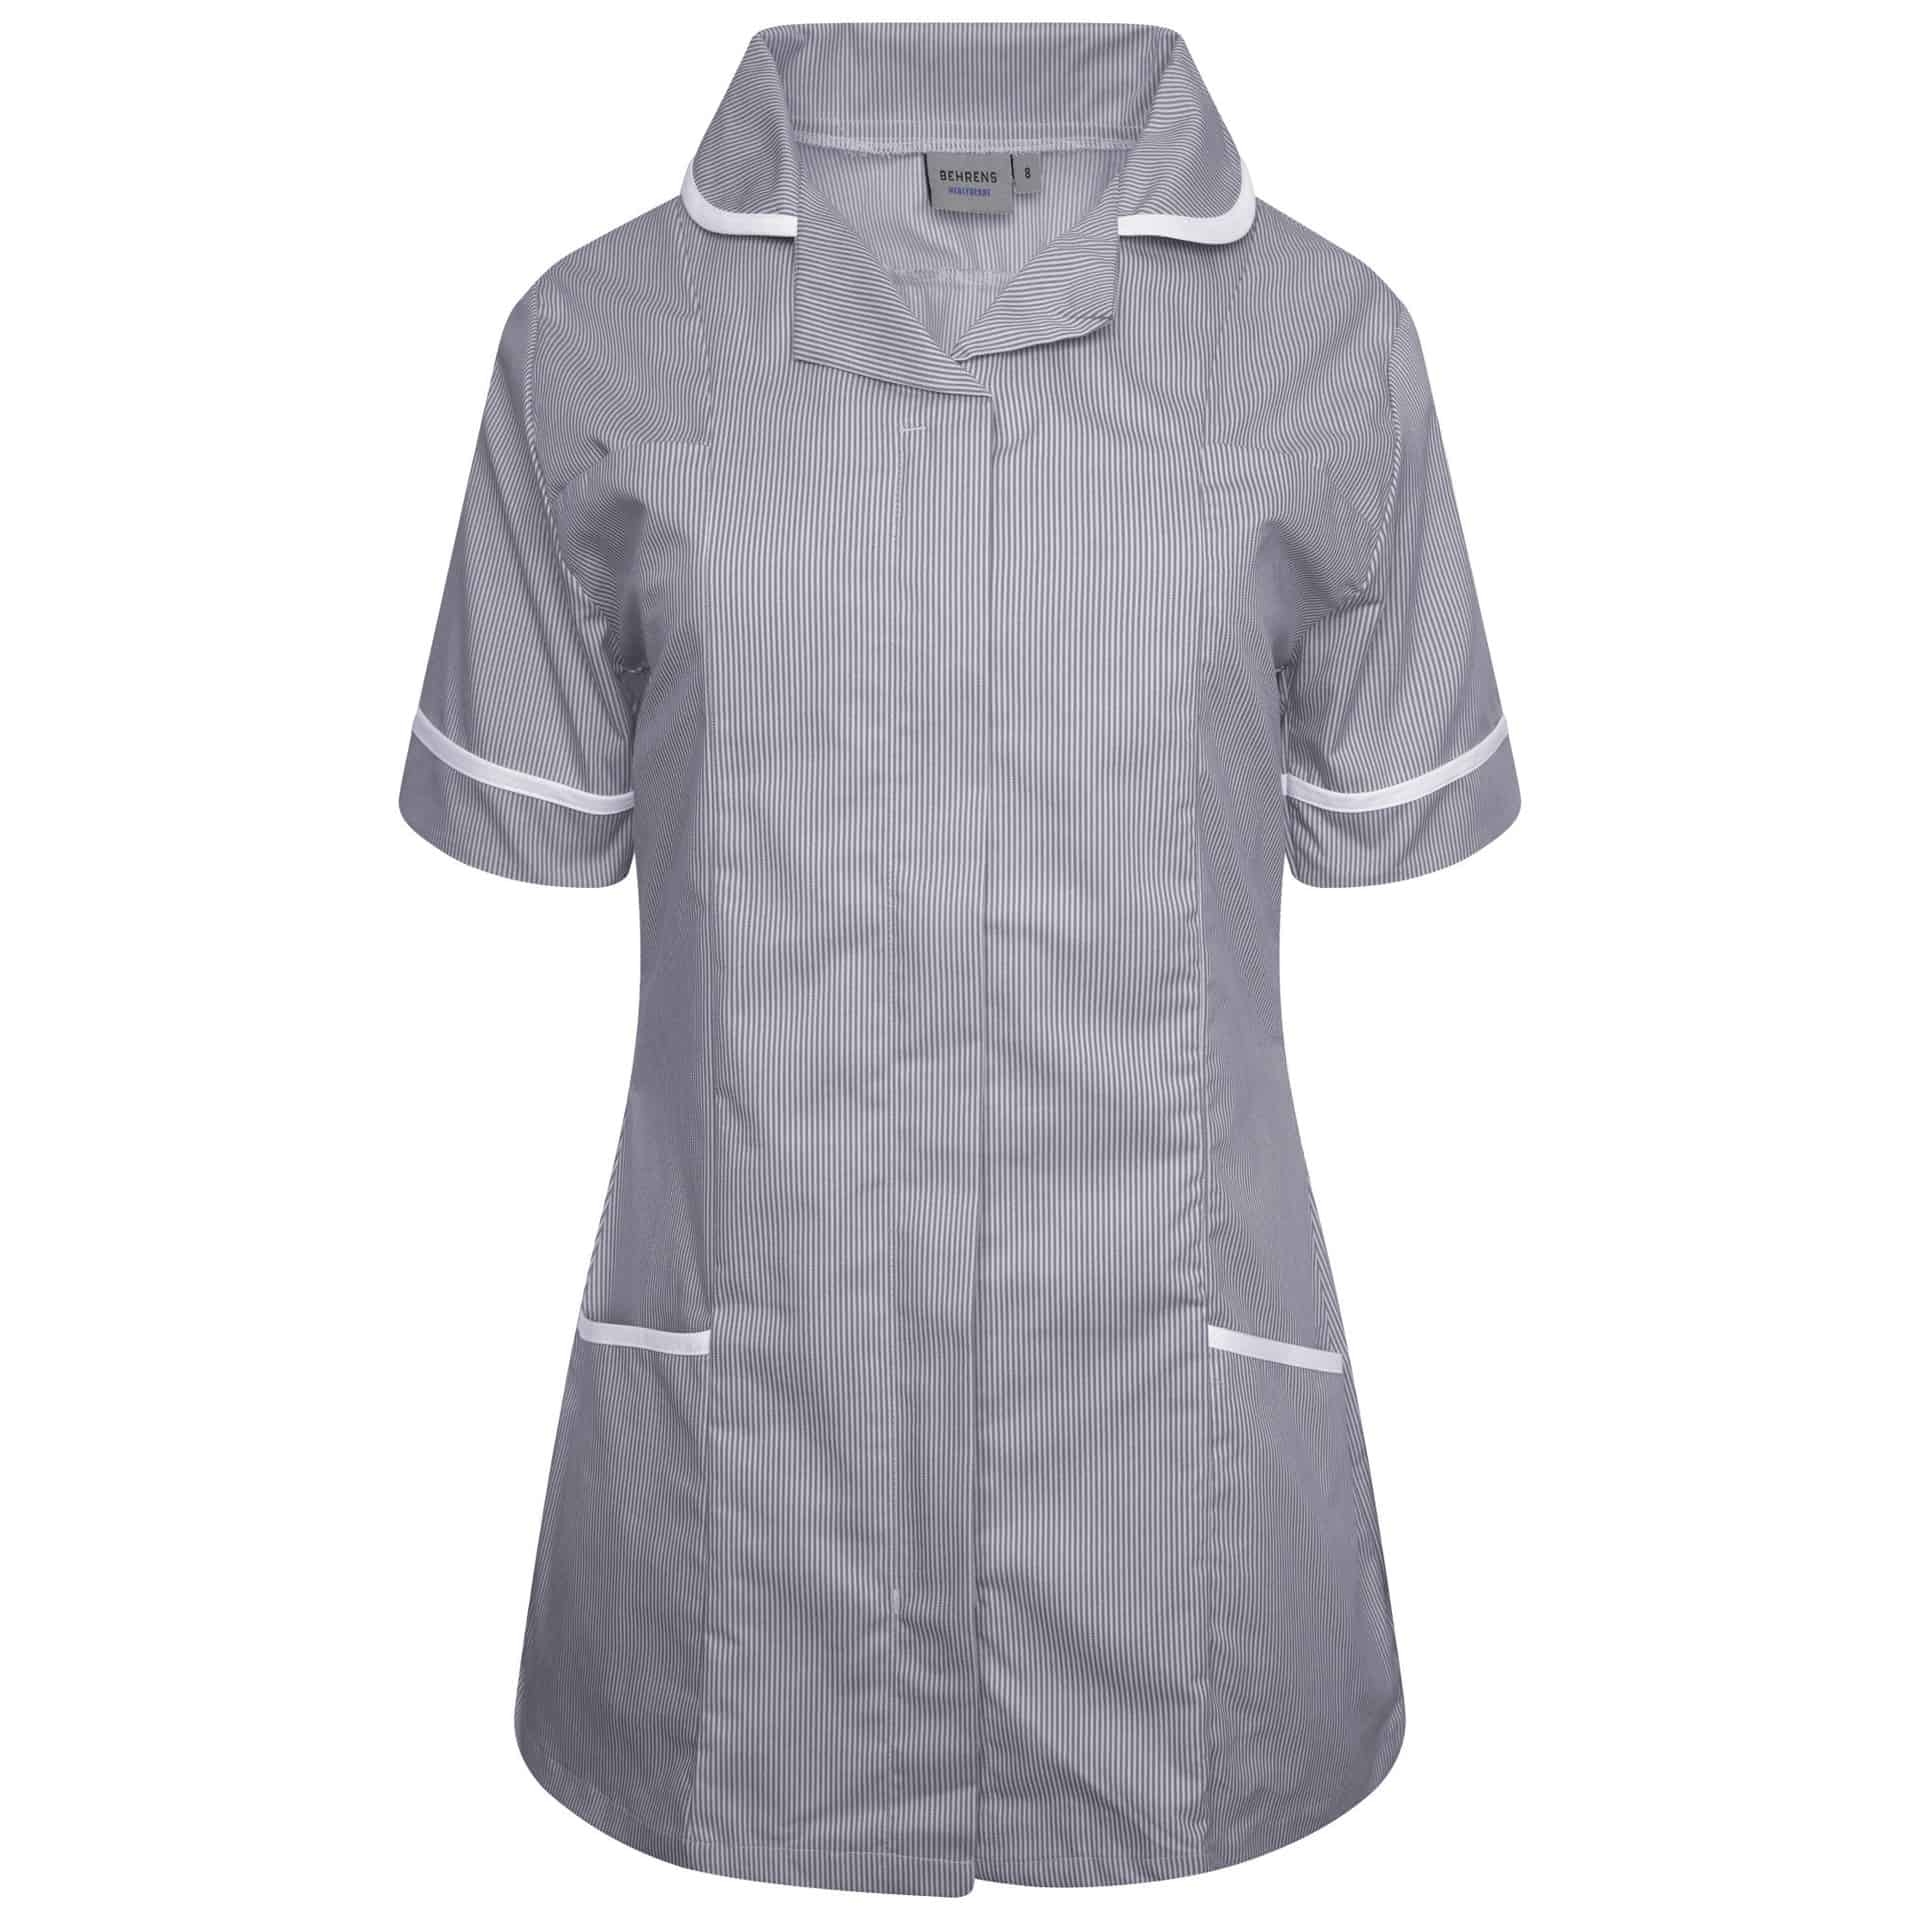 Behrens Ladies Tunic P.S – Navy/White Stripe/White Trim – 14 – Uniforms Online